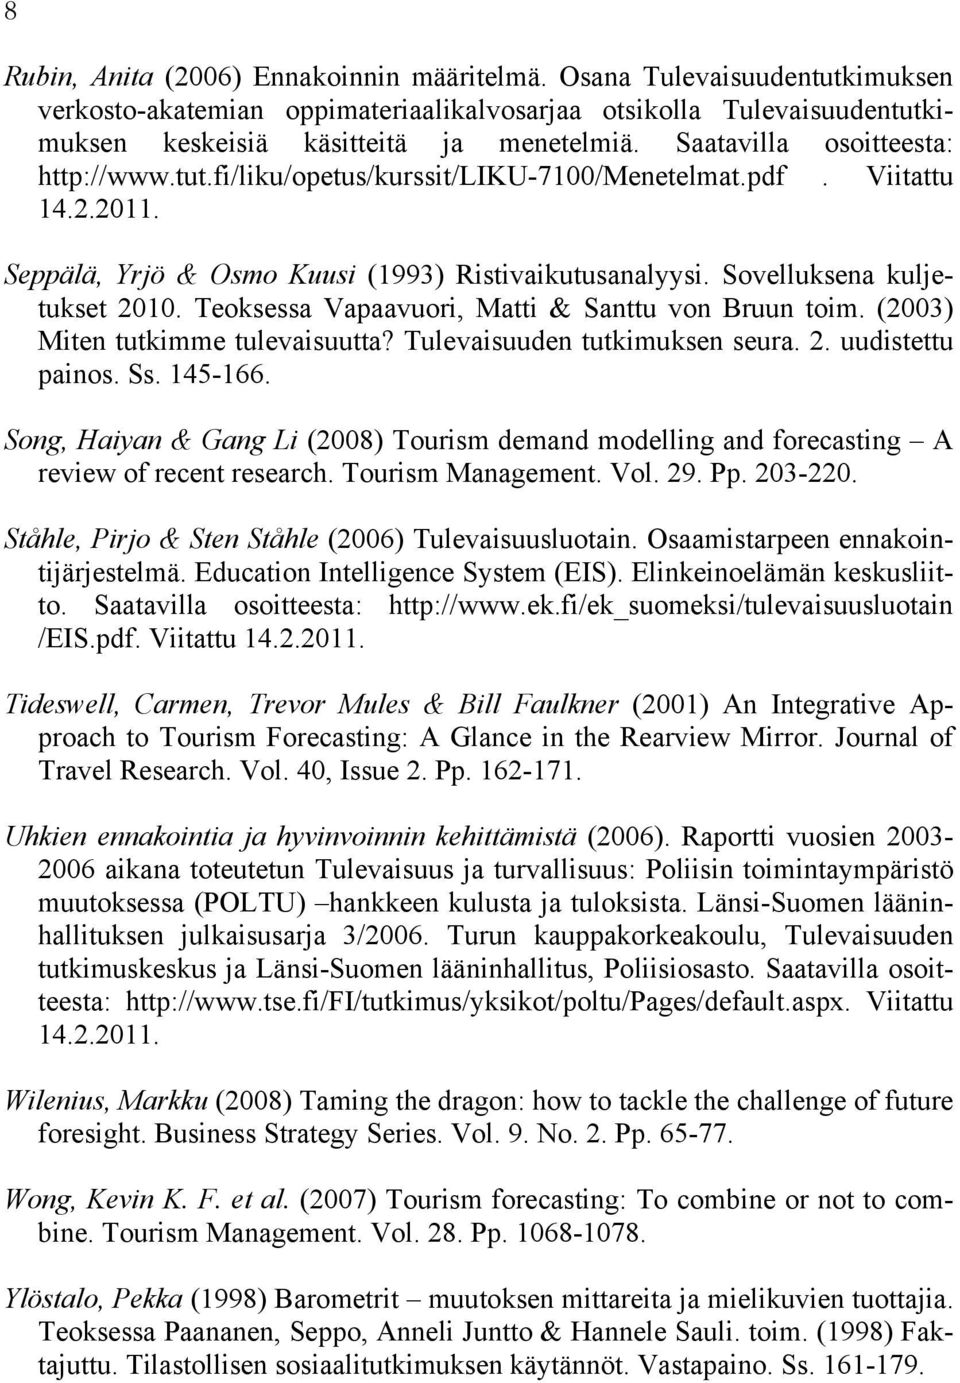 Teoksessa Vapaavuori, Matti & Santtu von Bruun toim. (2003) Miten tutkimme tulevaisuutta? Tulevaisuuden tutkimuksen seura. 2. uudistettu painos. Ss. 145-166.